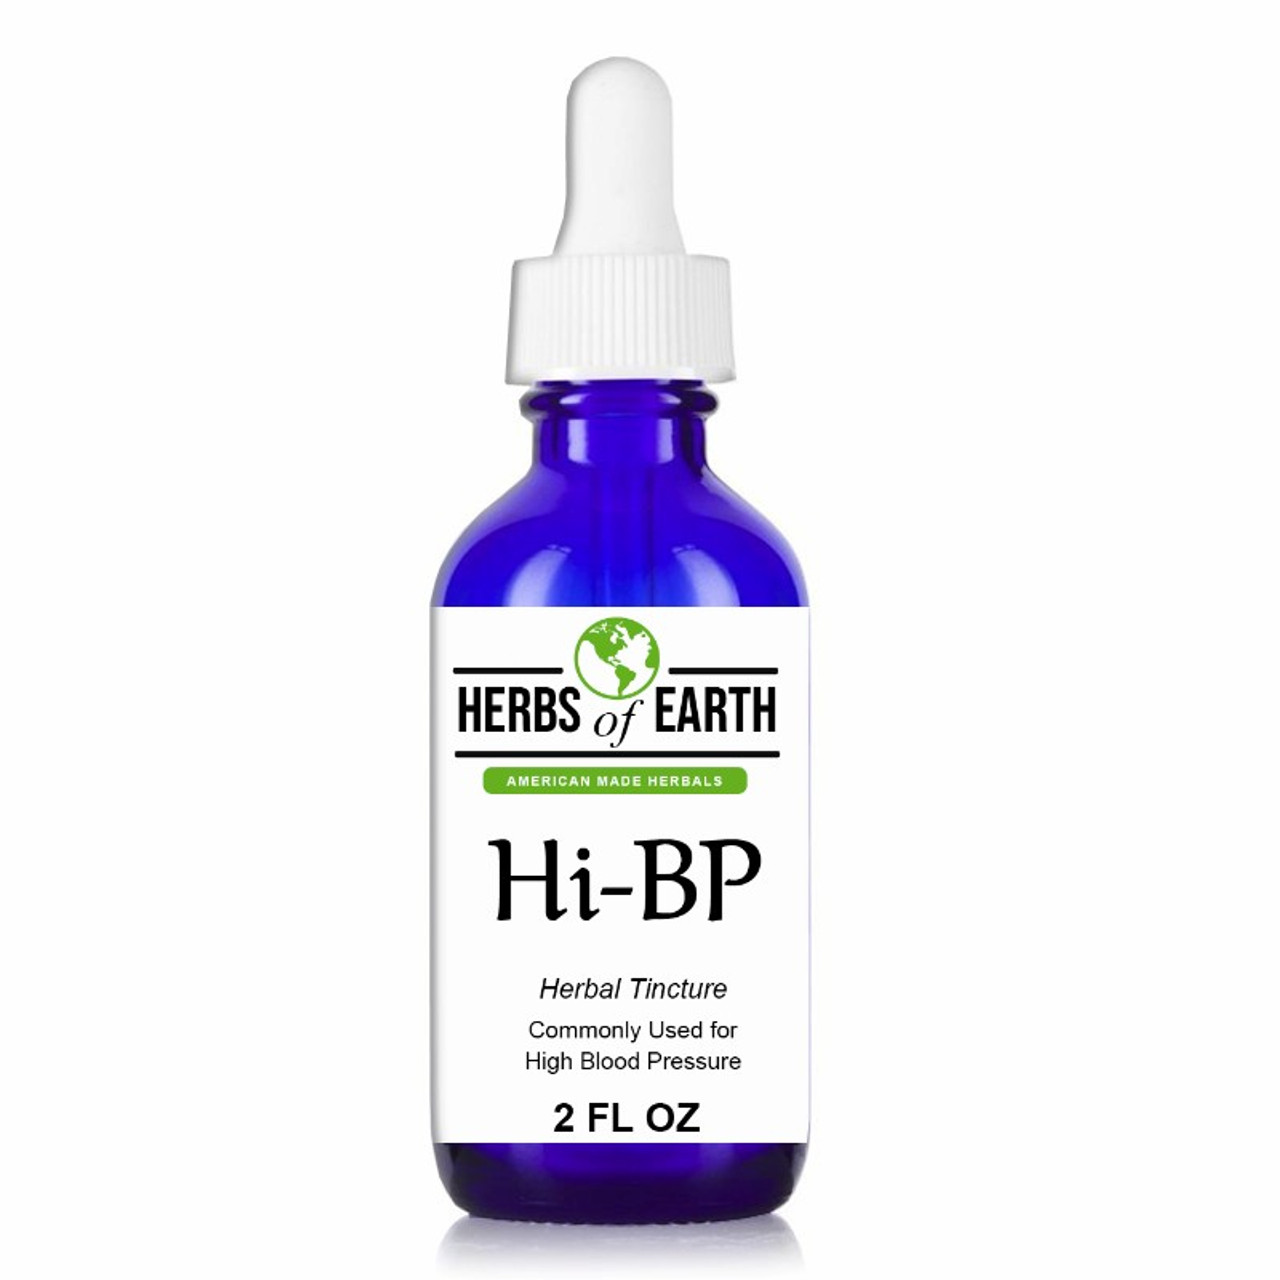 Hi-BP Herbal Tincture 